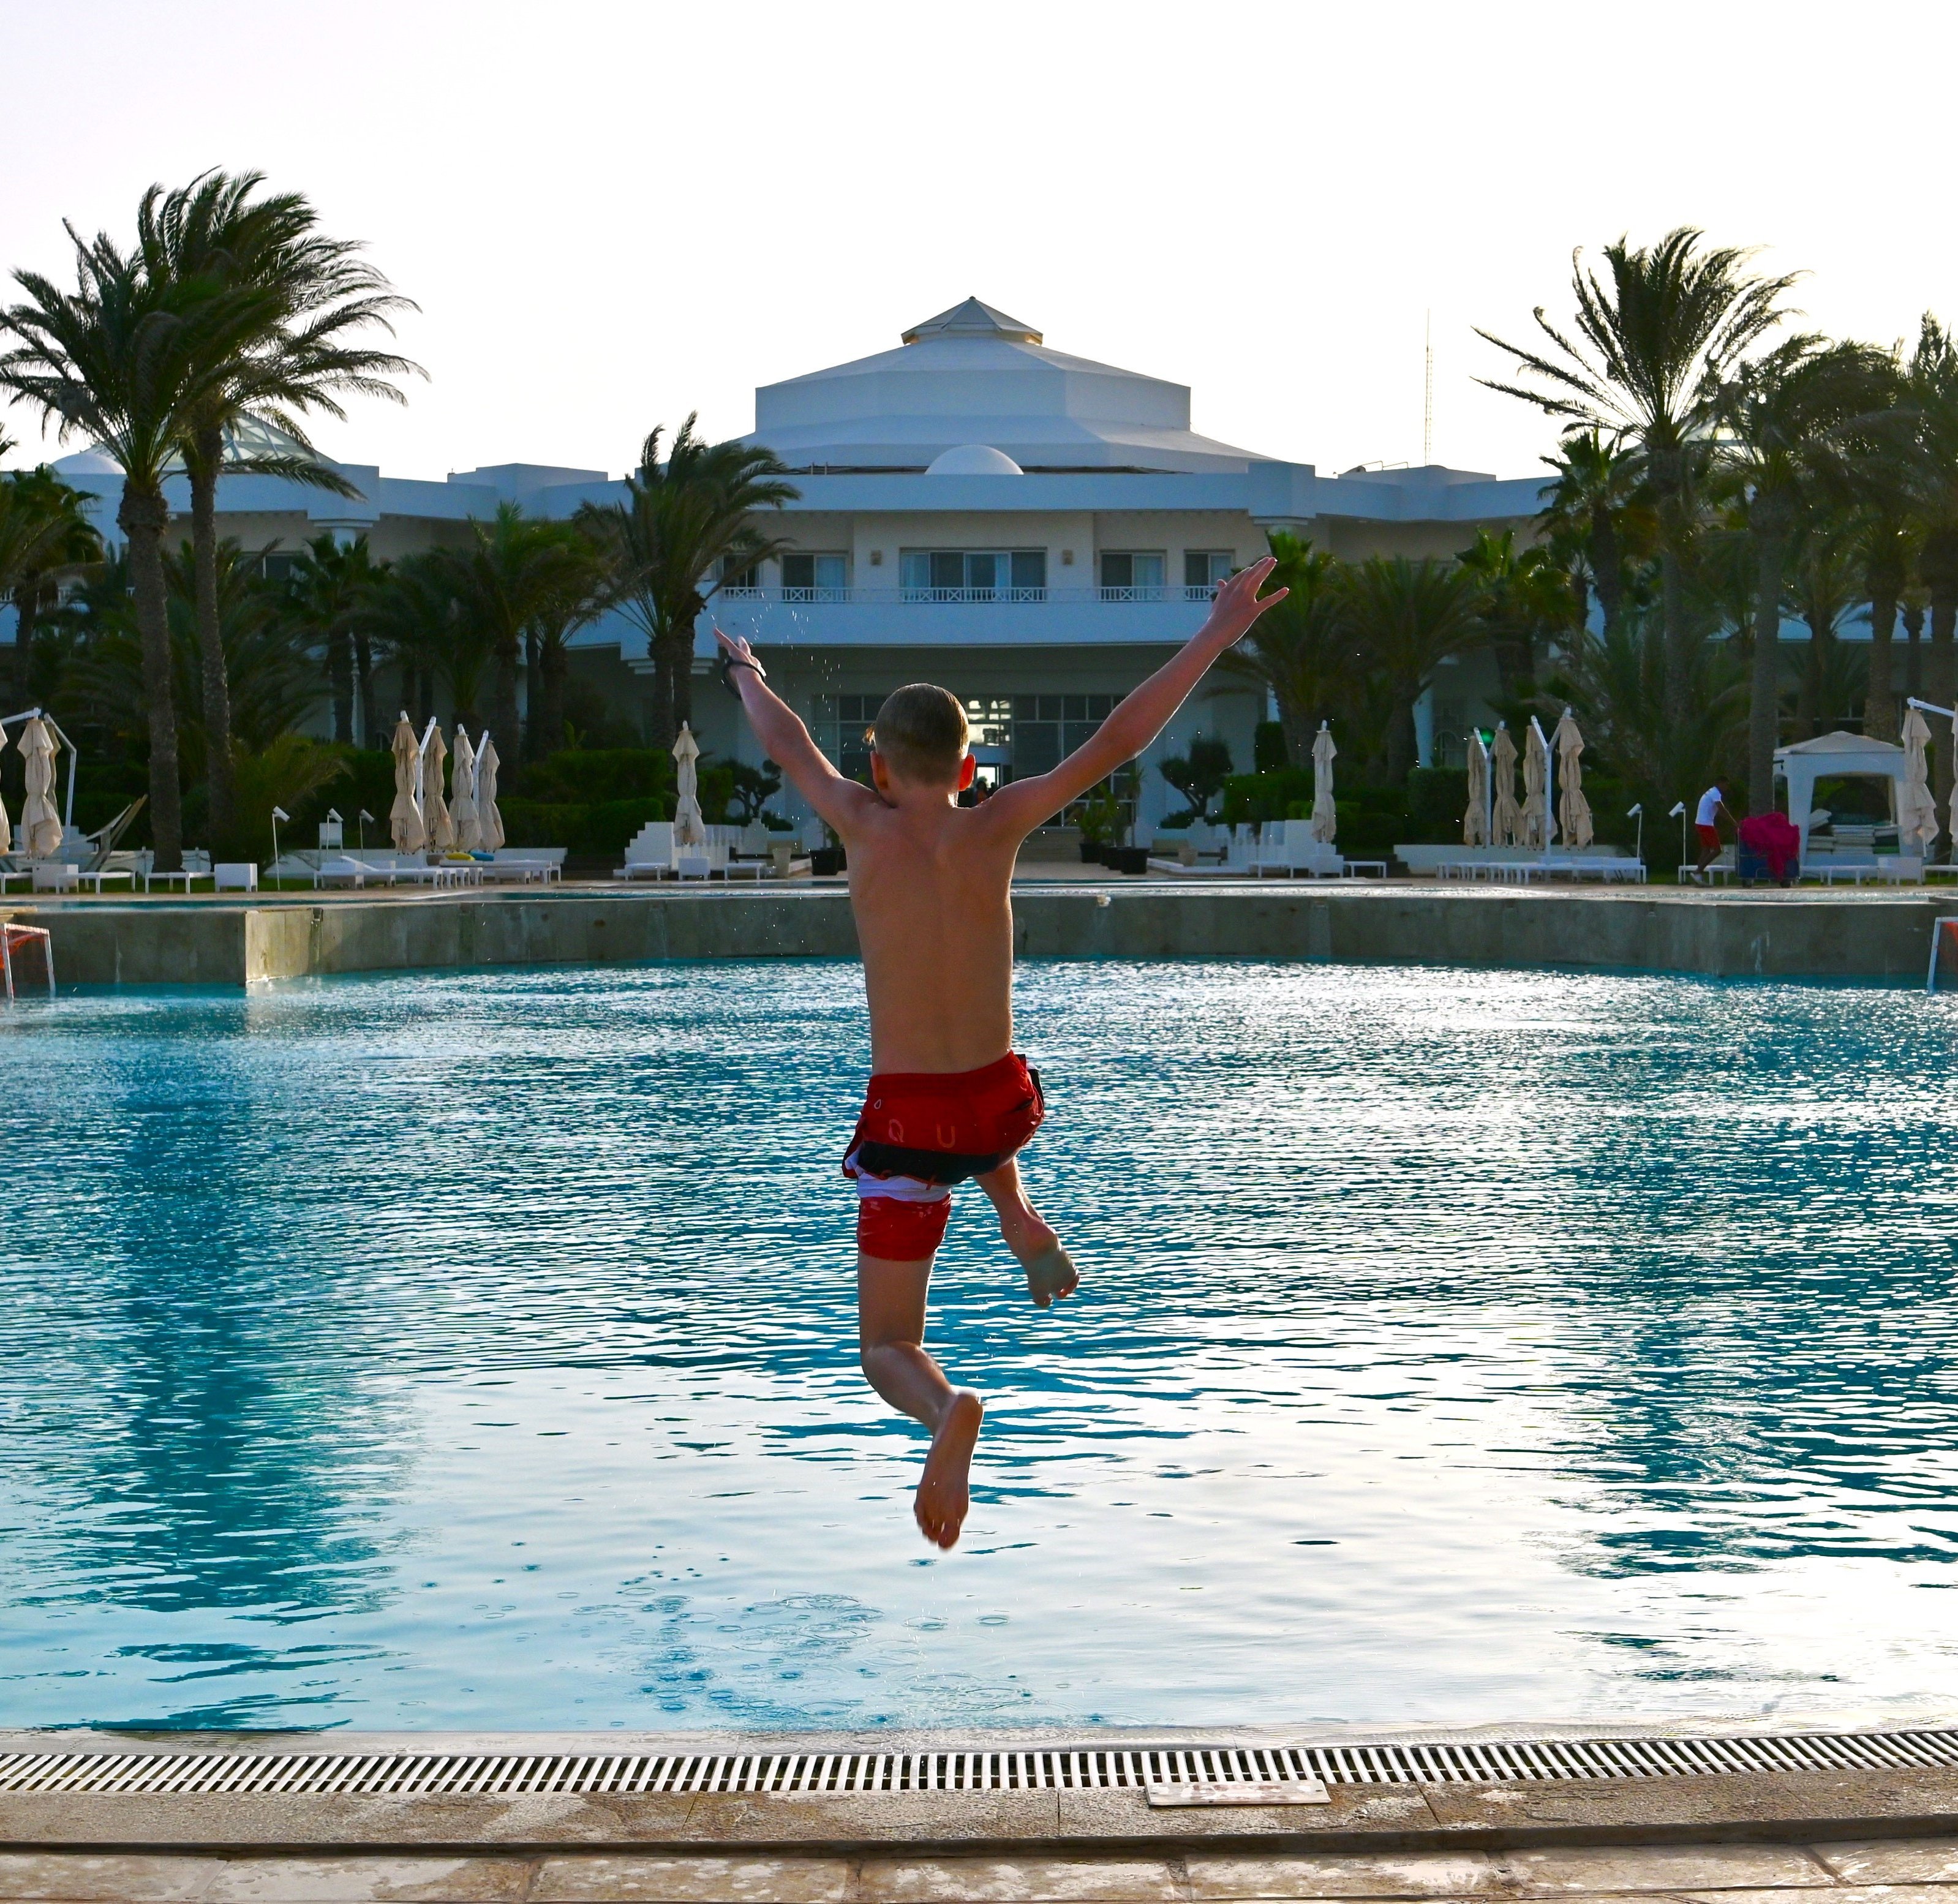 Tunesien for family - Tunesien mit Kindern - Junge springt in Pool